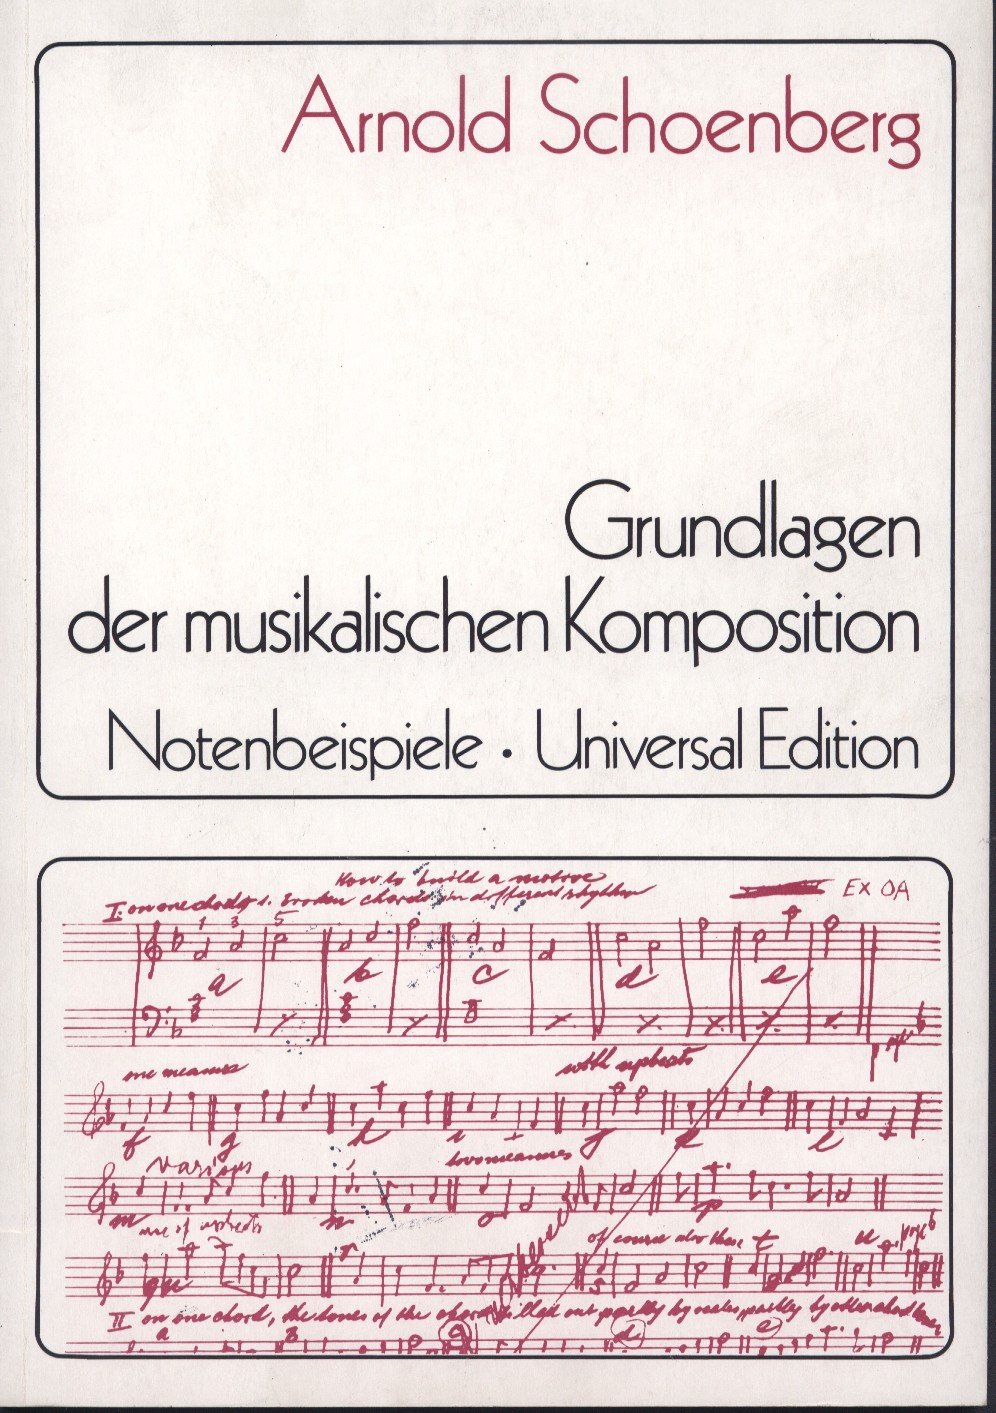 Die Grundlagen der musikalischen Komposition. Arnold Schönberg